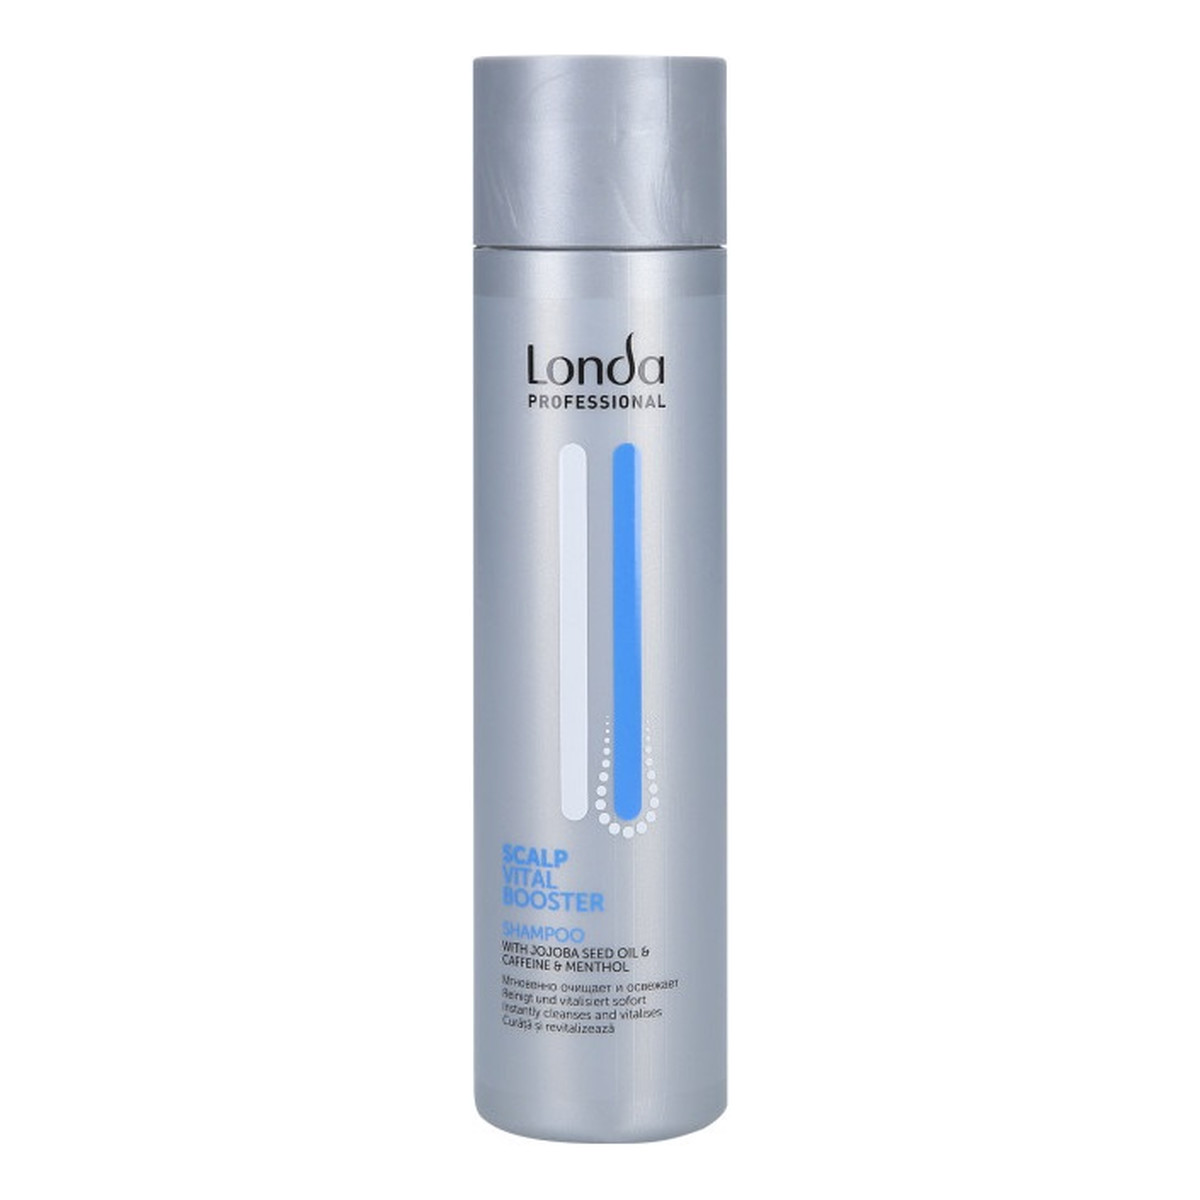 Londa Professional Scalp vital booster shampoo szampon odżywiający skórę głowy 250ml